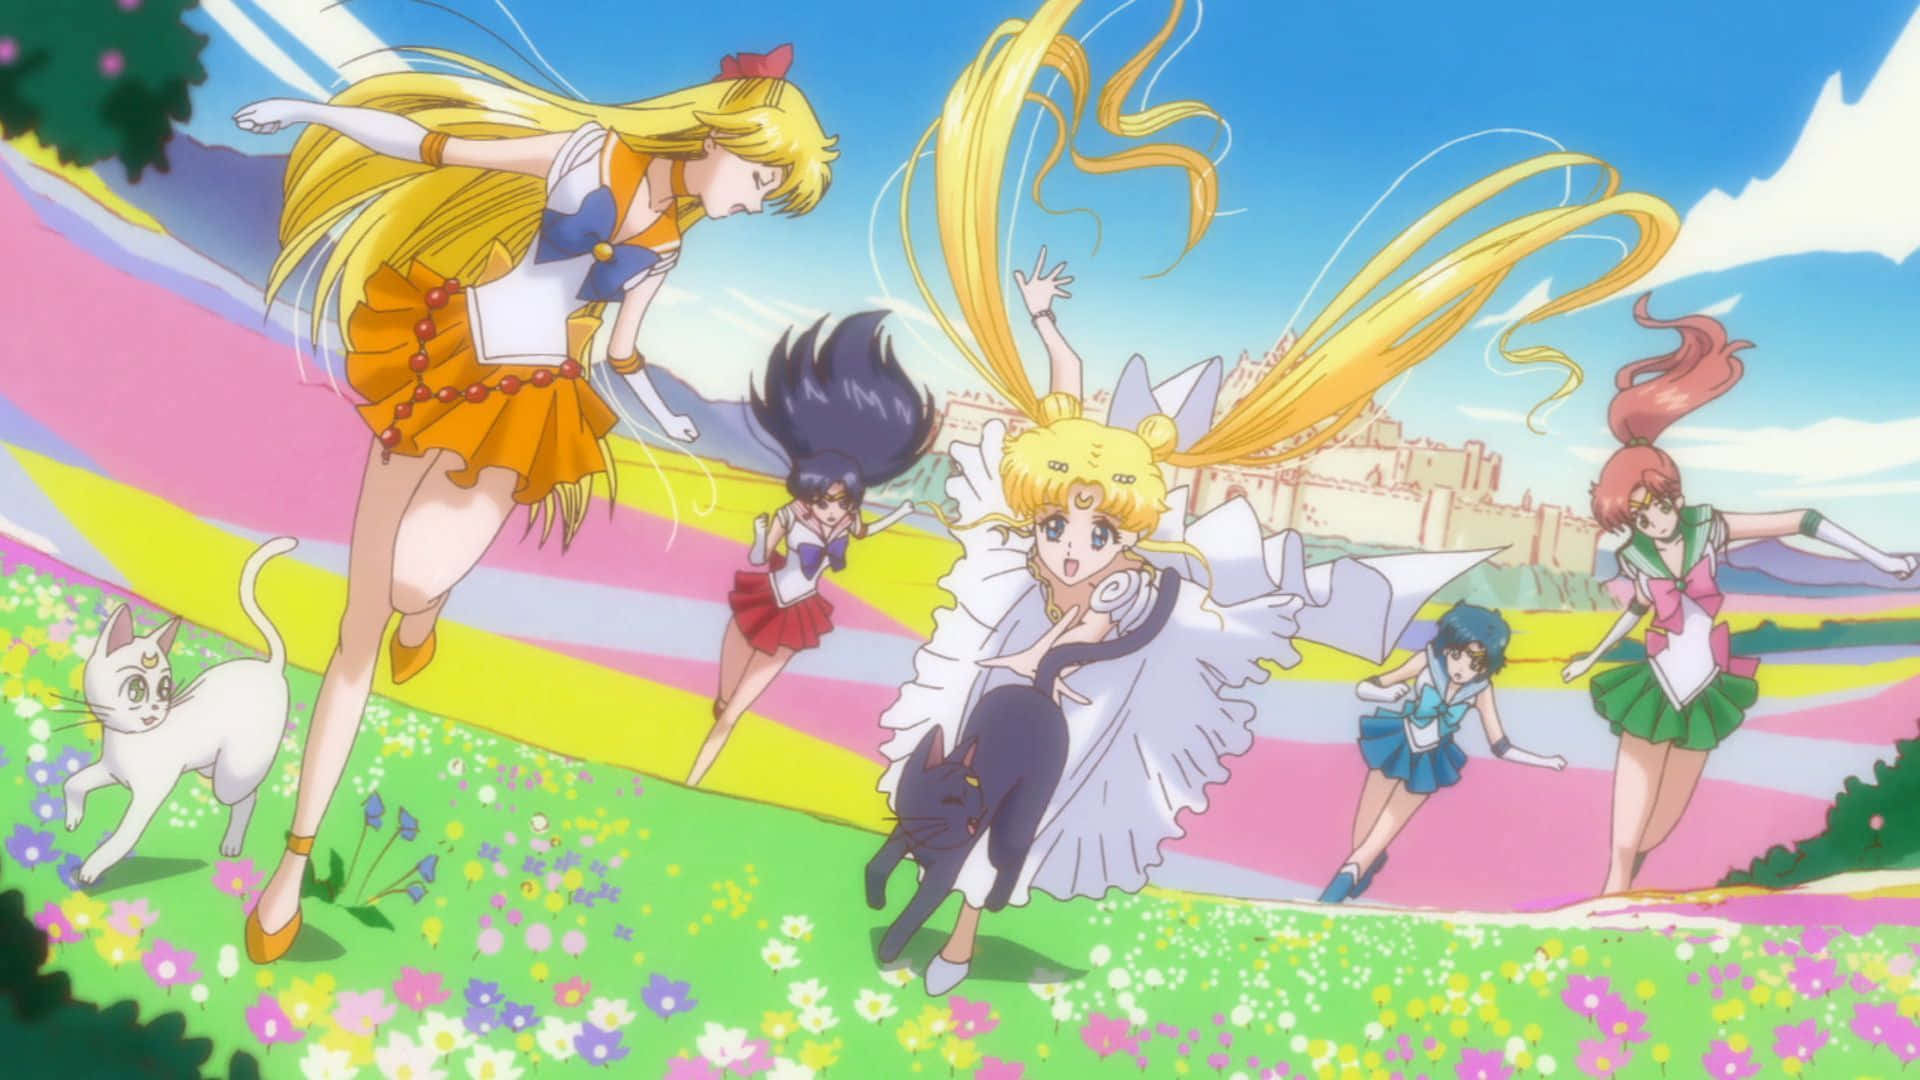 Sehenheißt Glauben: Das Unendliche Abenteuer Von Sailor Moon